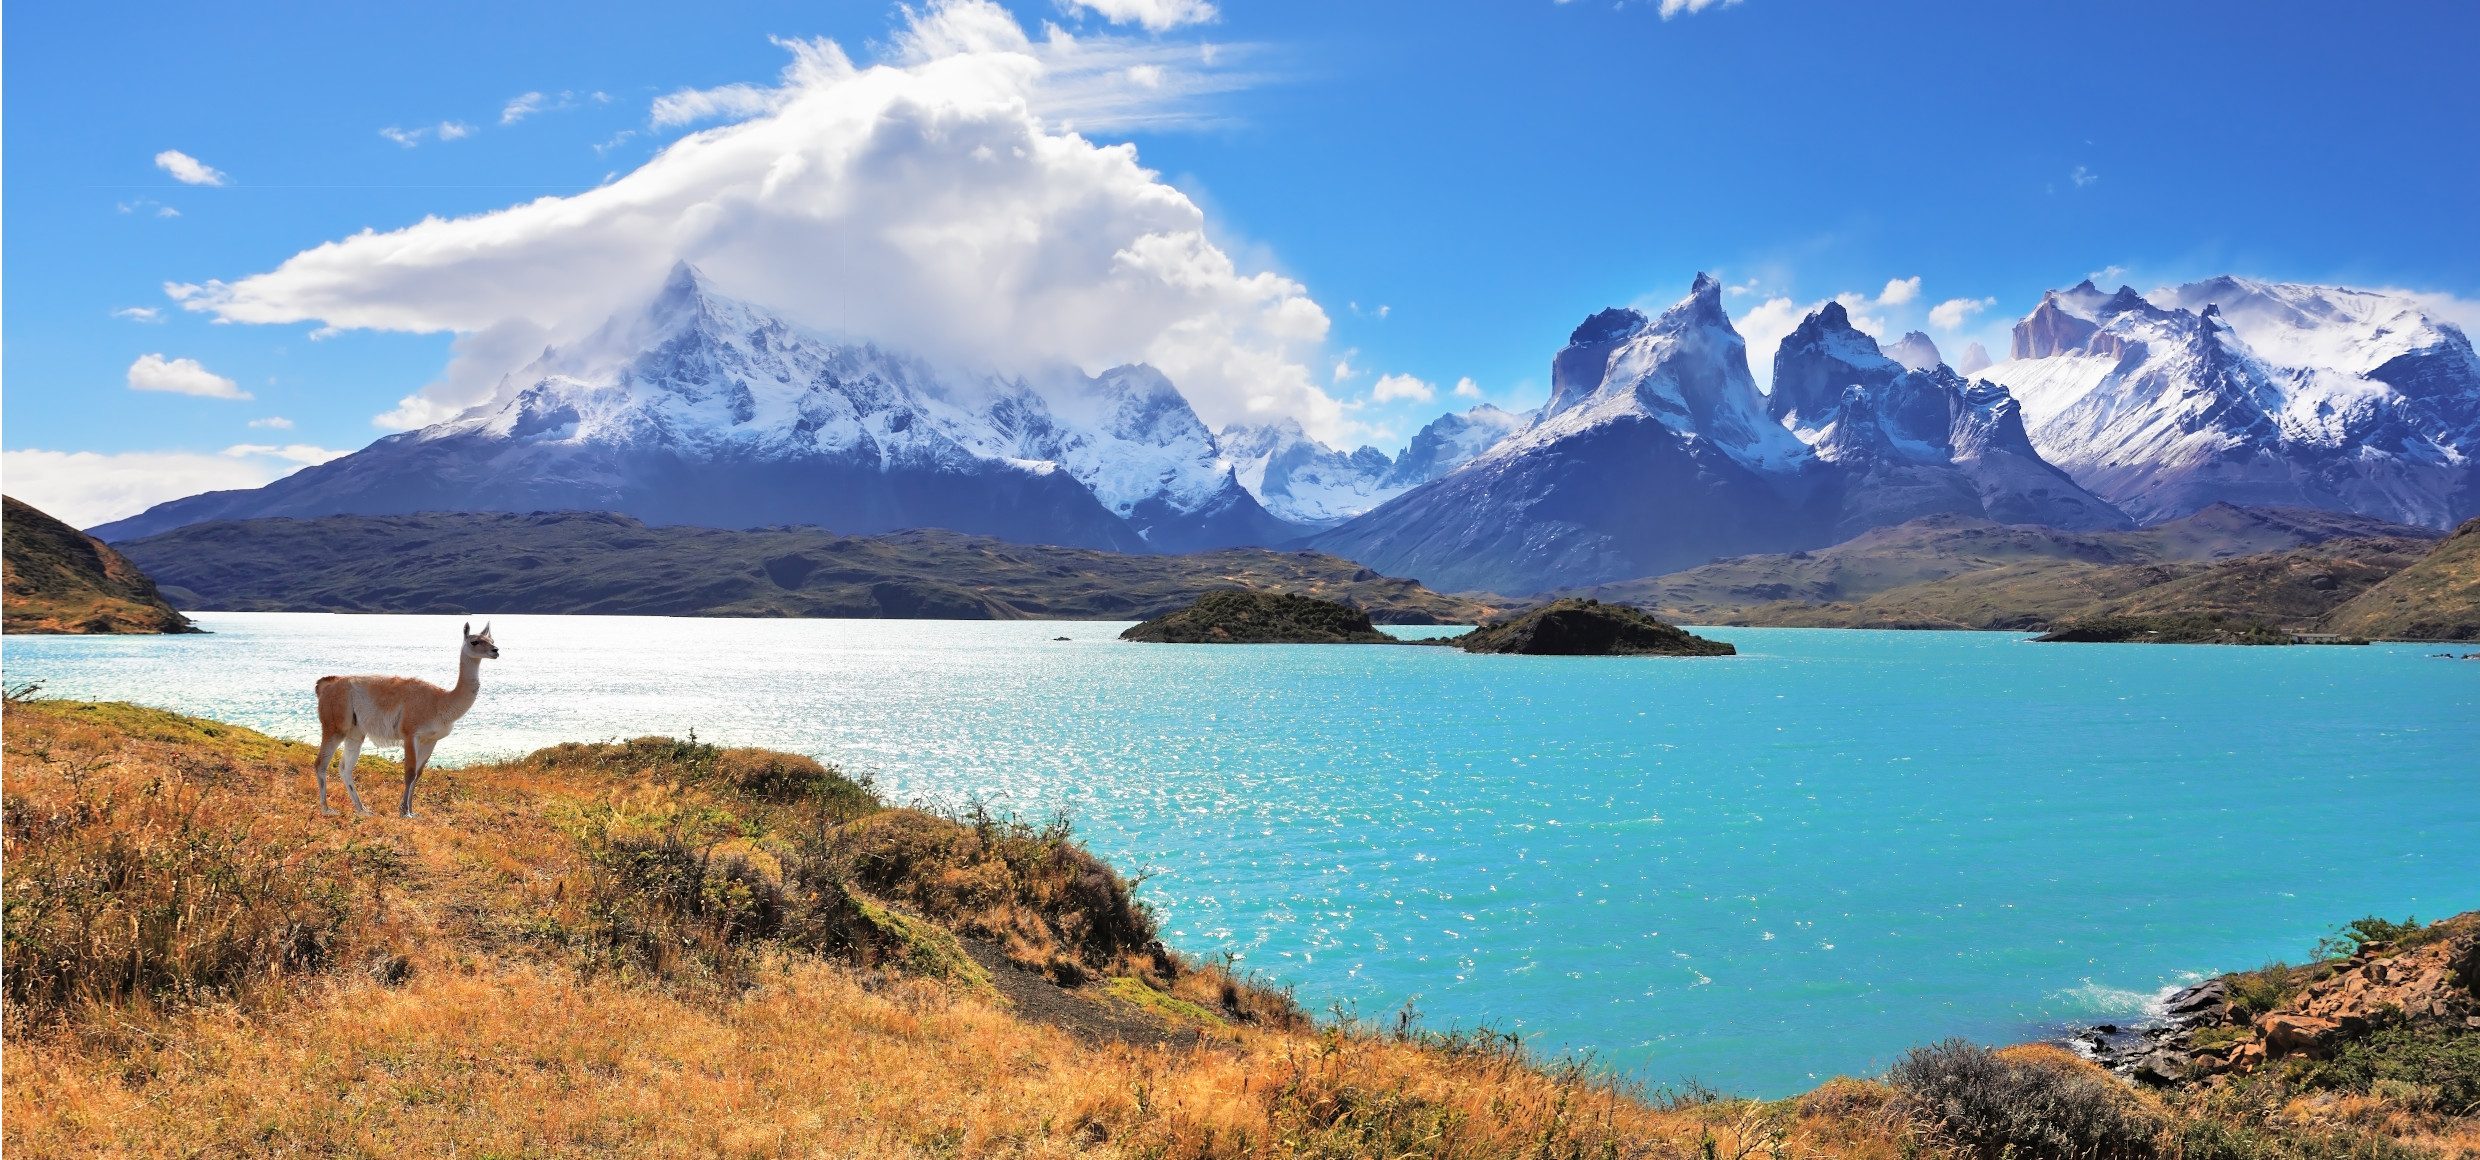 Chile-Torres-del-Paine-Lama